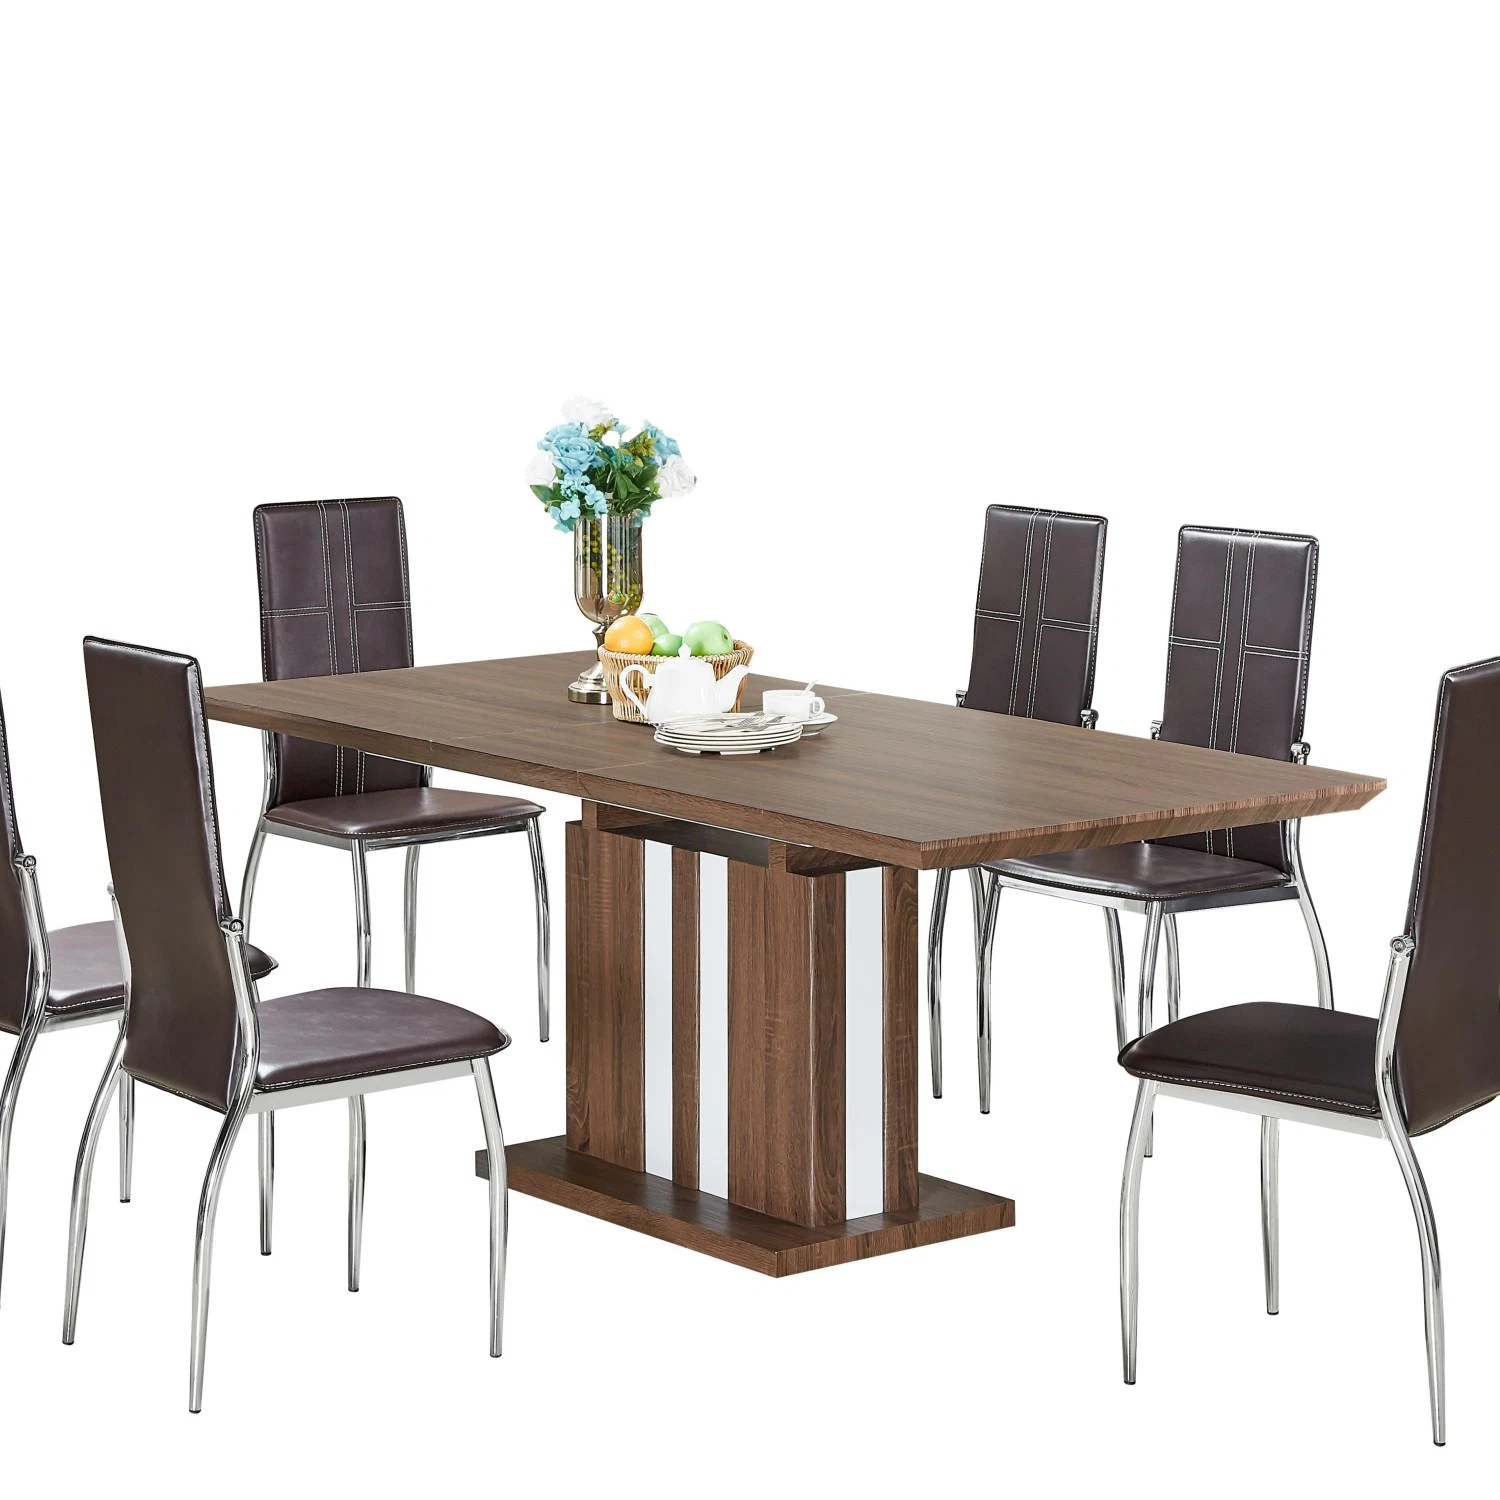 Brown panneau MDF en bois blanc Table à manger avec chaises design nordique moderne